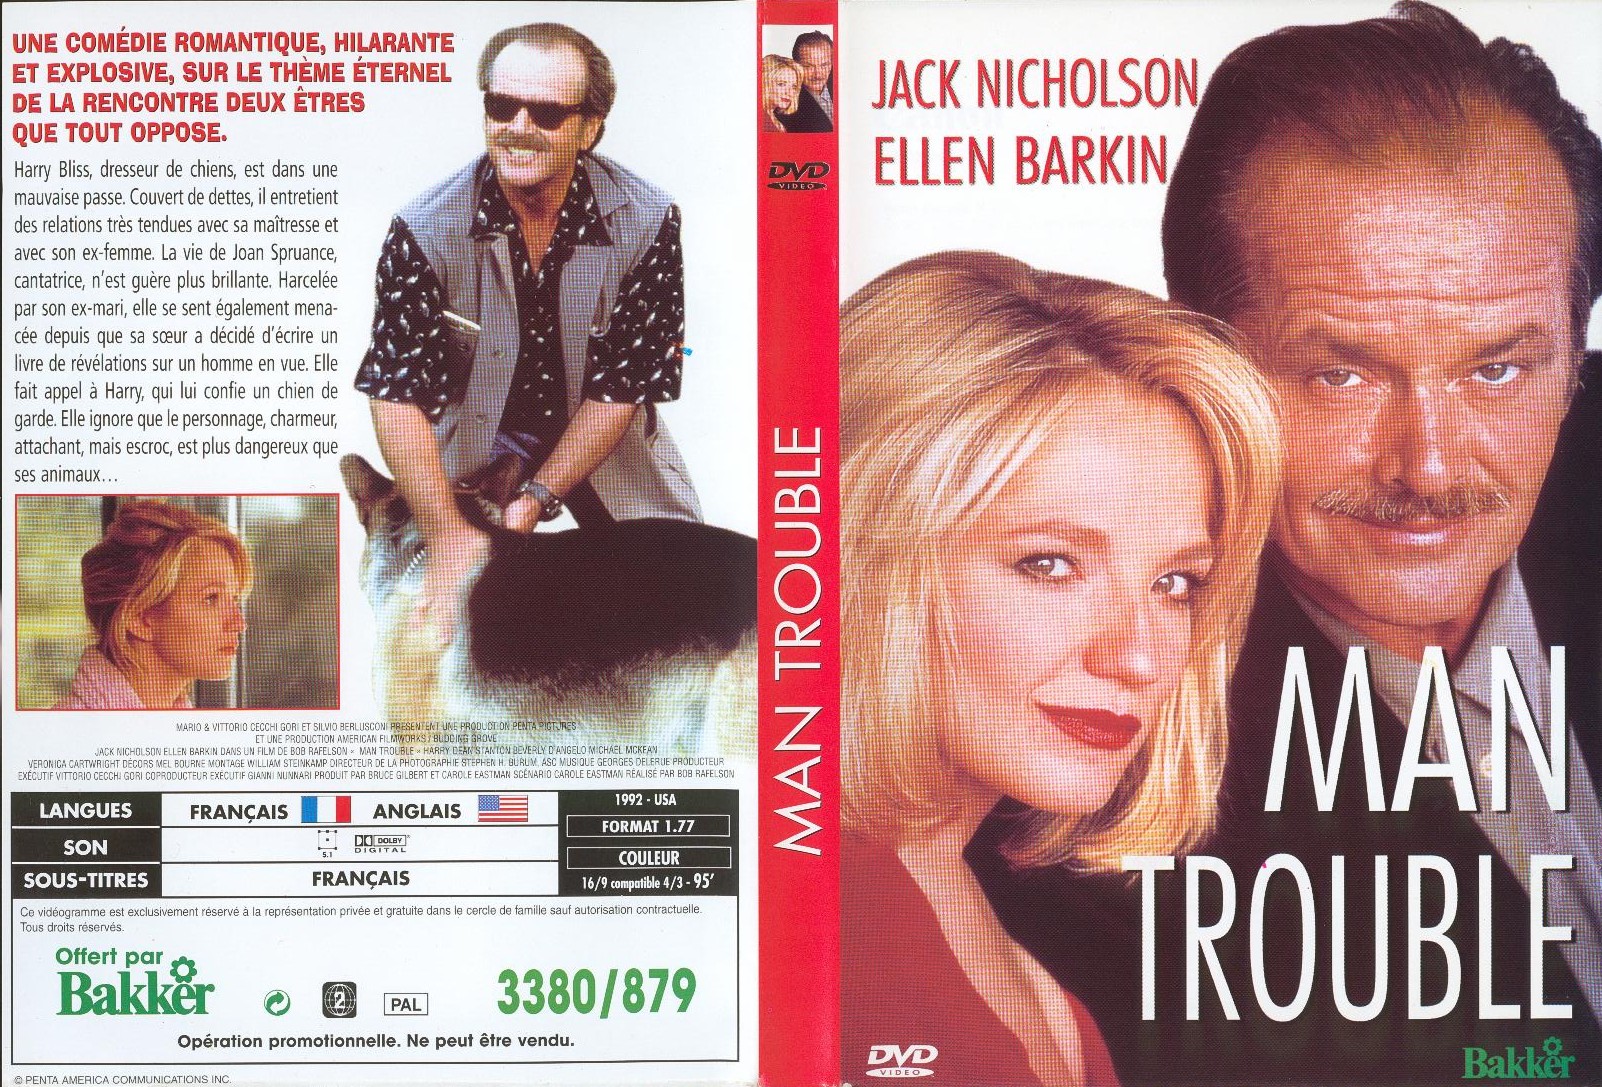 Jaquette DVD Man trouble